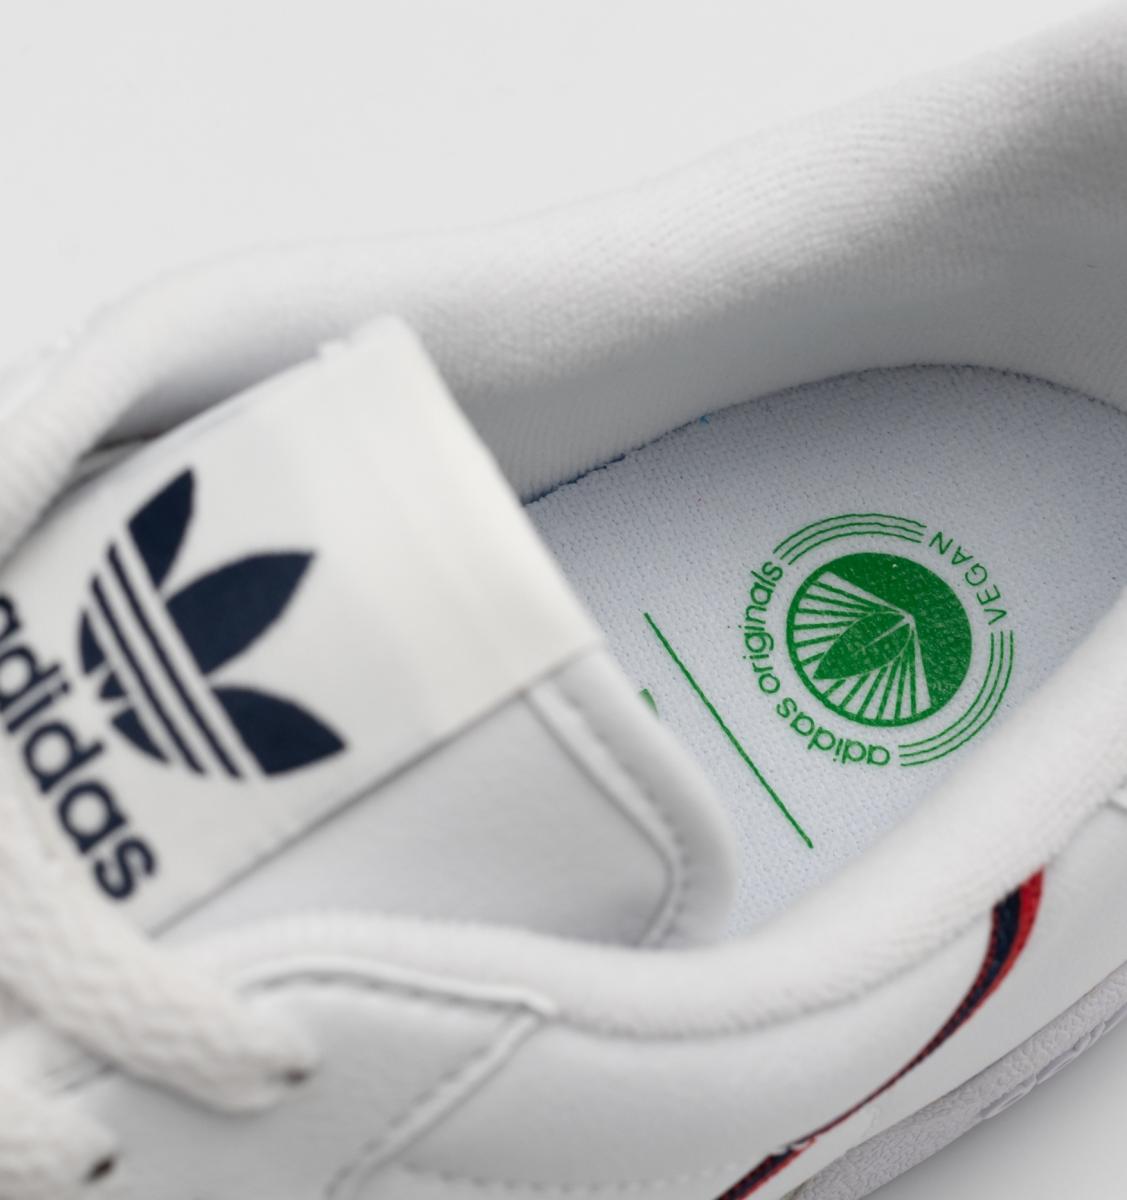 Adidas представил веганские версии культовых моделей кроссовок